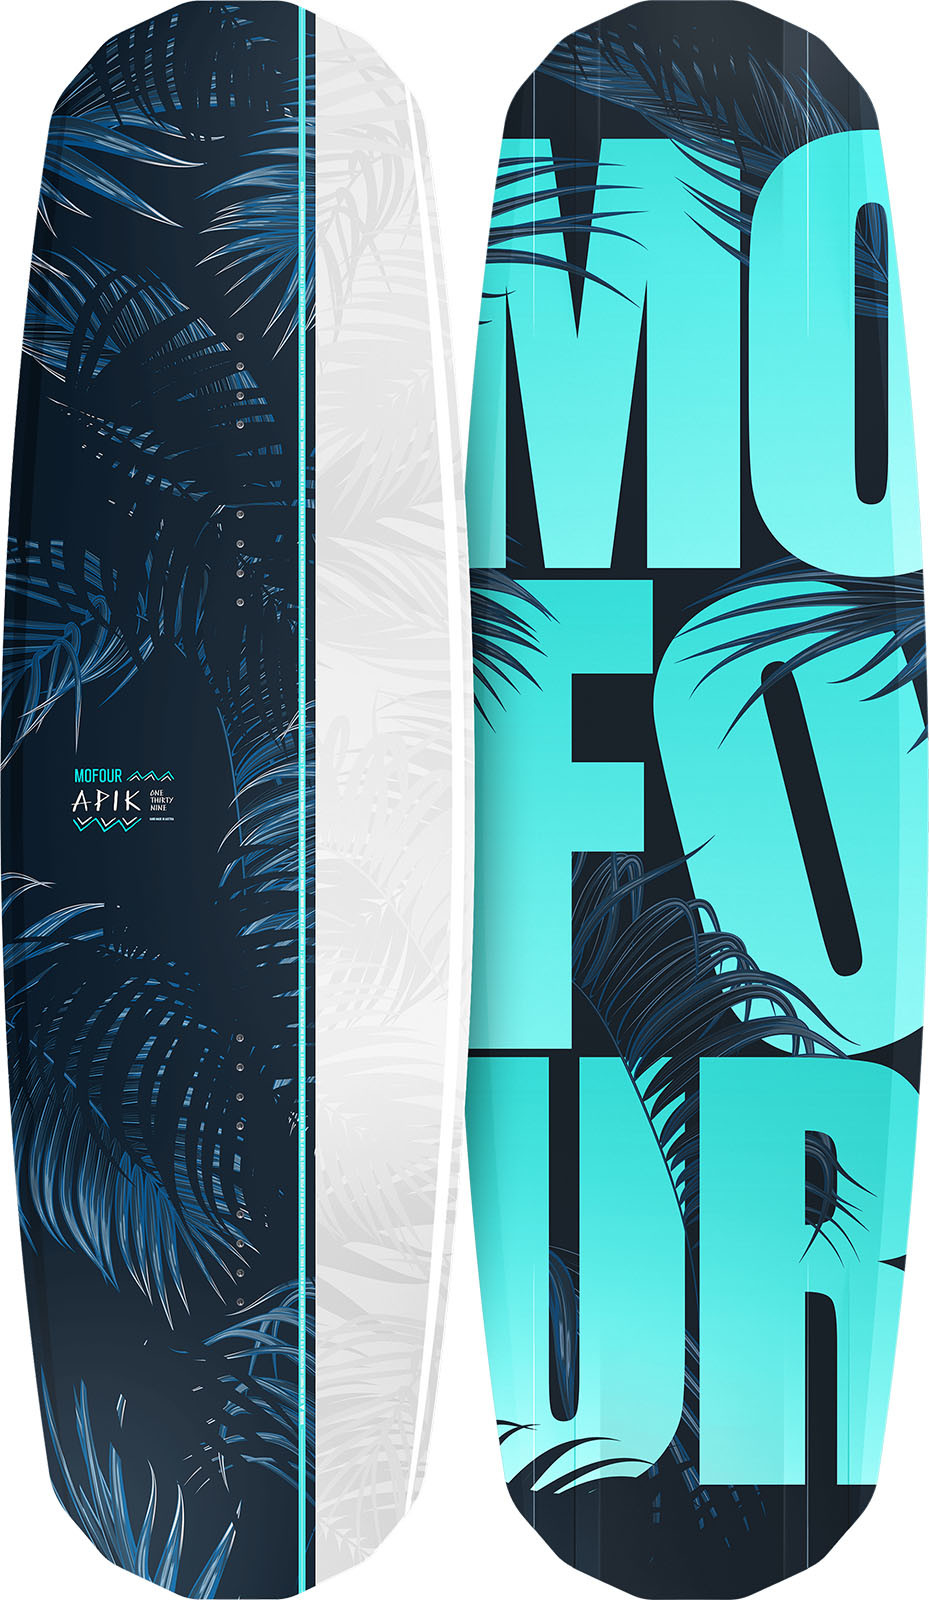 mofour wakeboards 2018 APIK